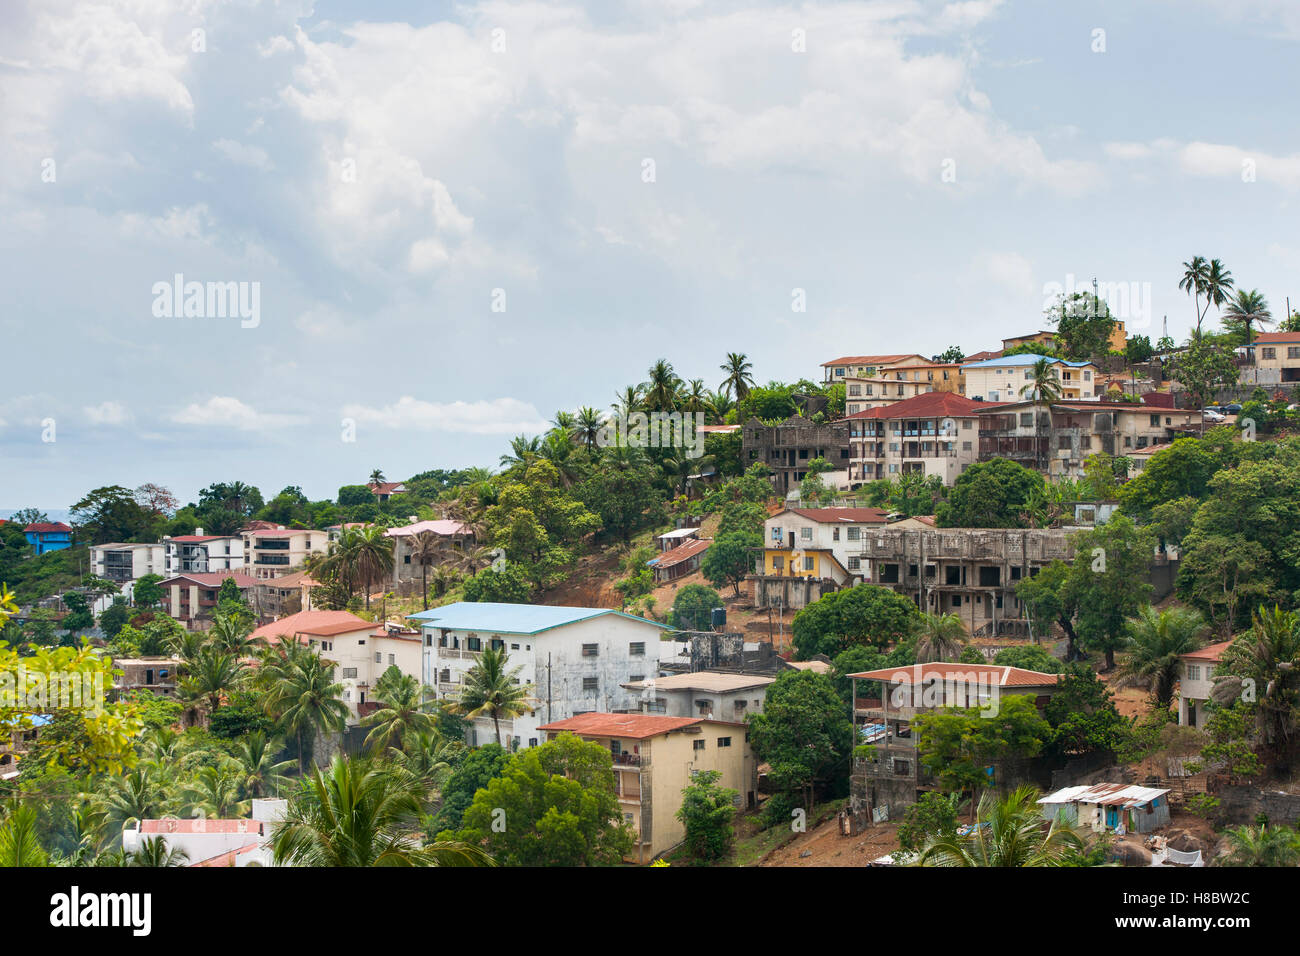 Einem Vorort von Freetown zeigt Häuser und Gebäude in Hanglage inmitten tropischer vegetation Stockfoto